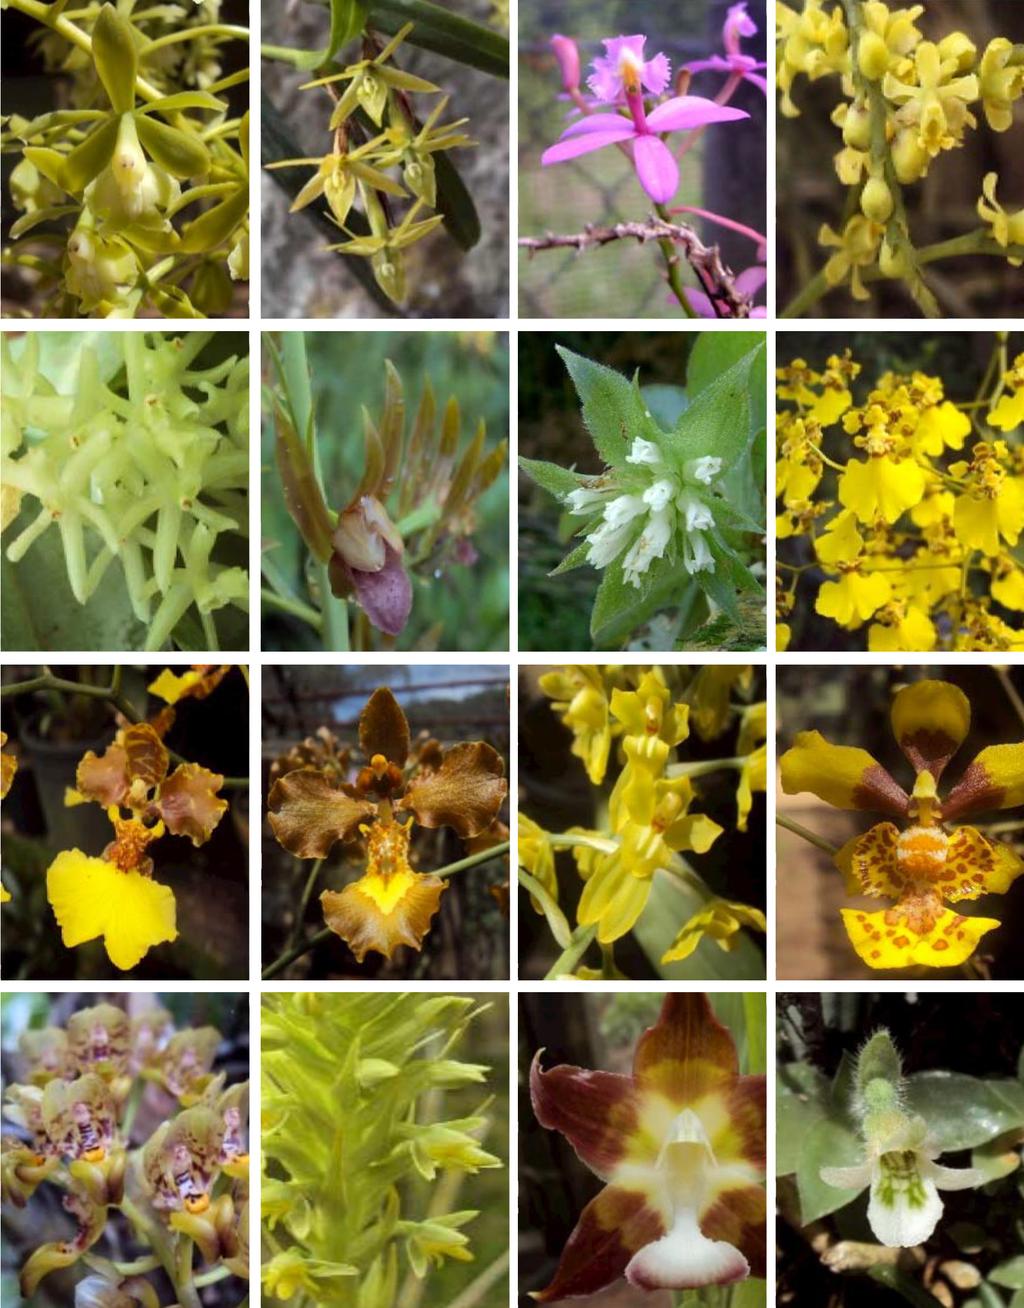 caetano et al. Updated checklist of the Orchidaceae of Benedito Novo 87 Figure 6. From top left to bottom right: Epidendrum densiflorum. E. ramosum. E. secundum. E. tridactylum. E. vesicatum.